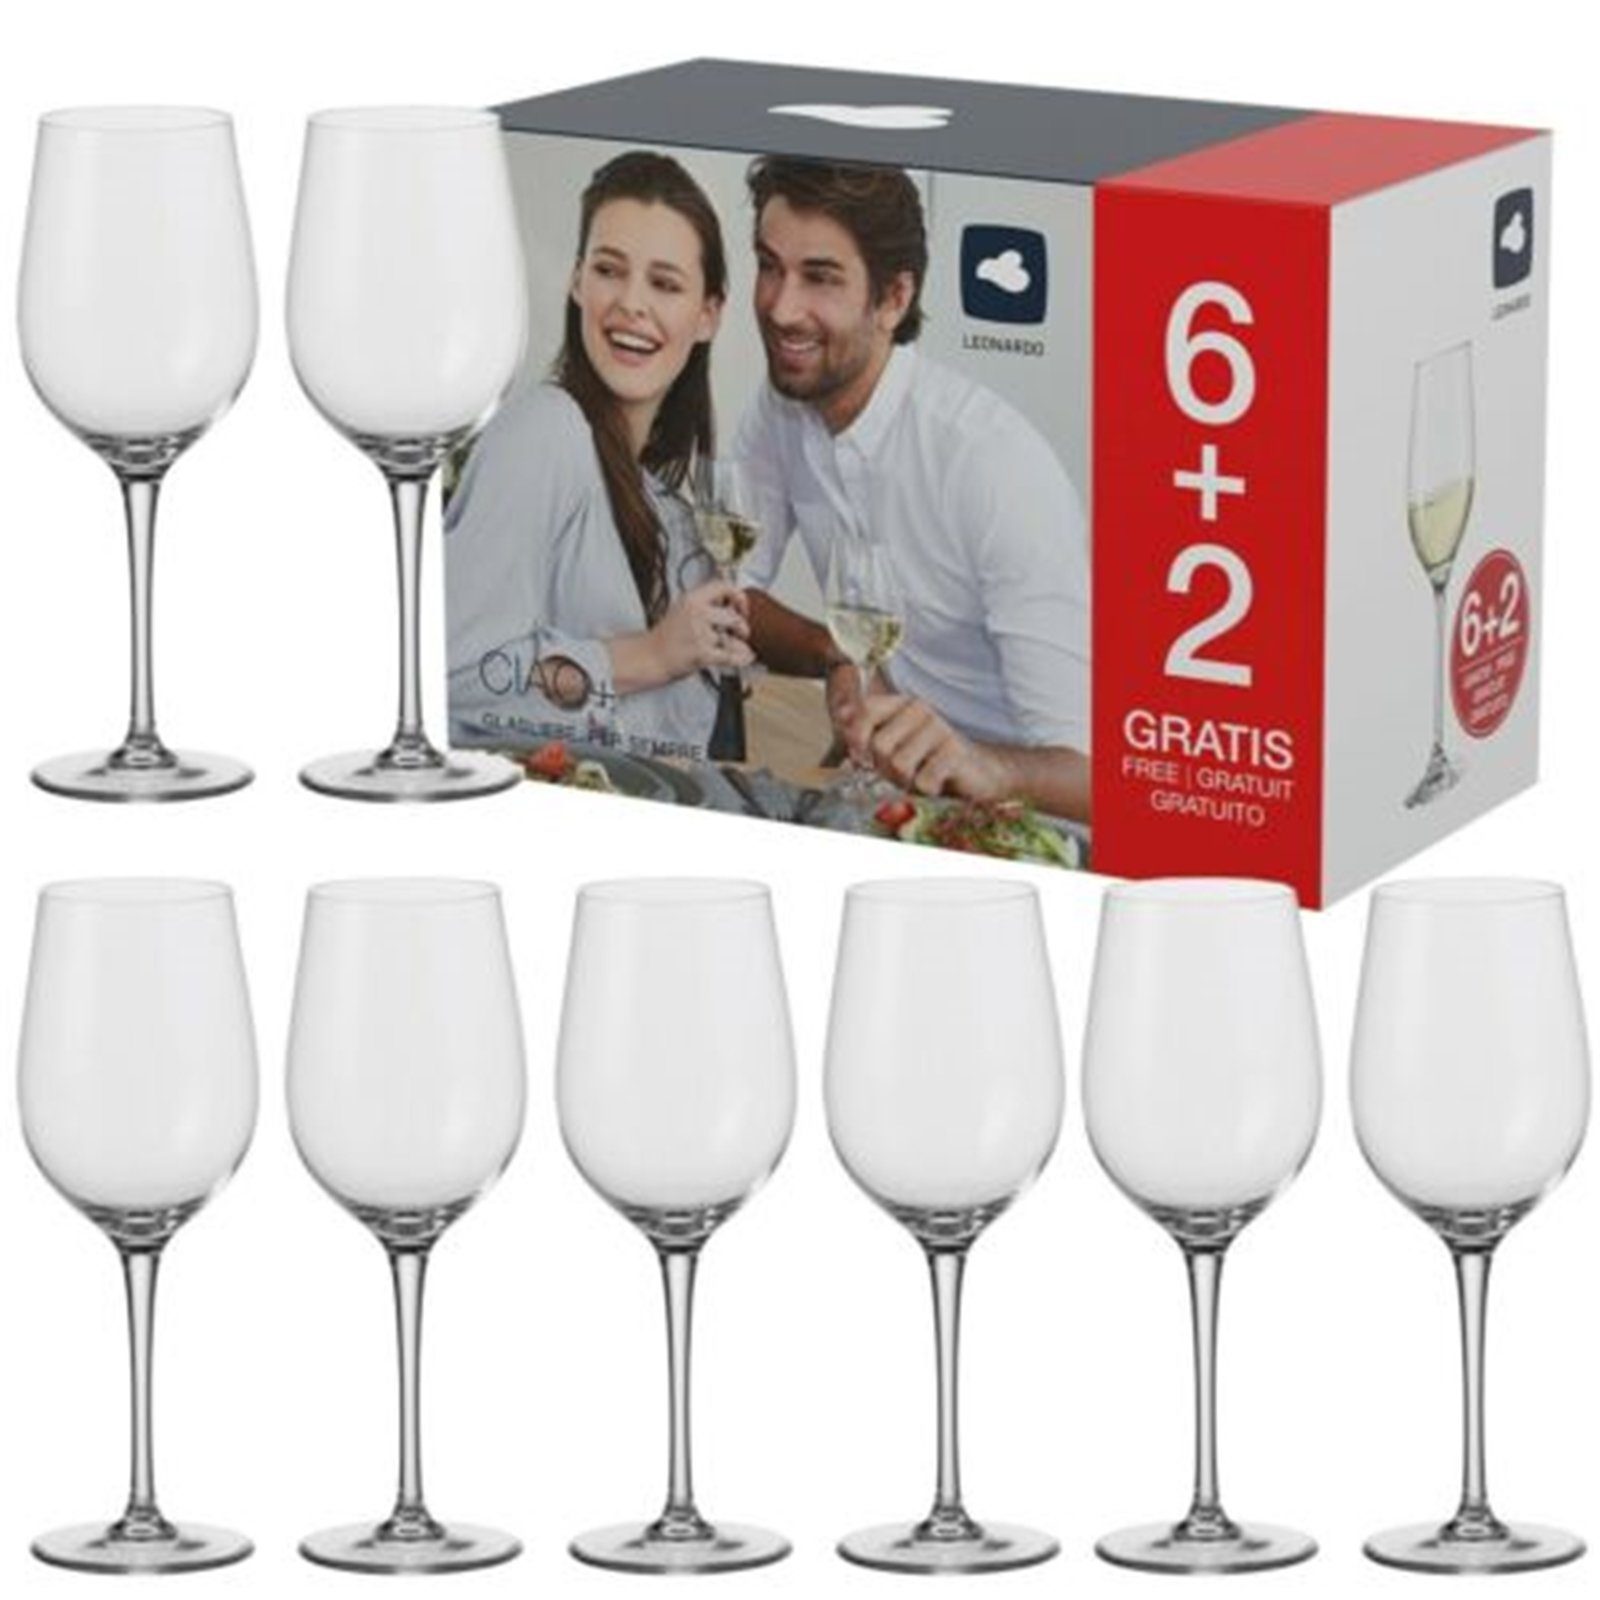 LEONARDO Gläser-Set »Weißweingläser 300 ml, 6+2 Ciao«, Glas